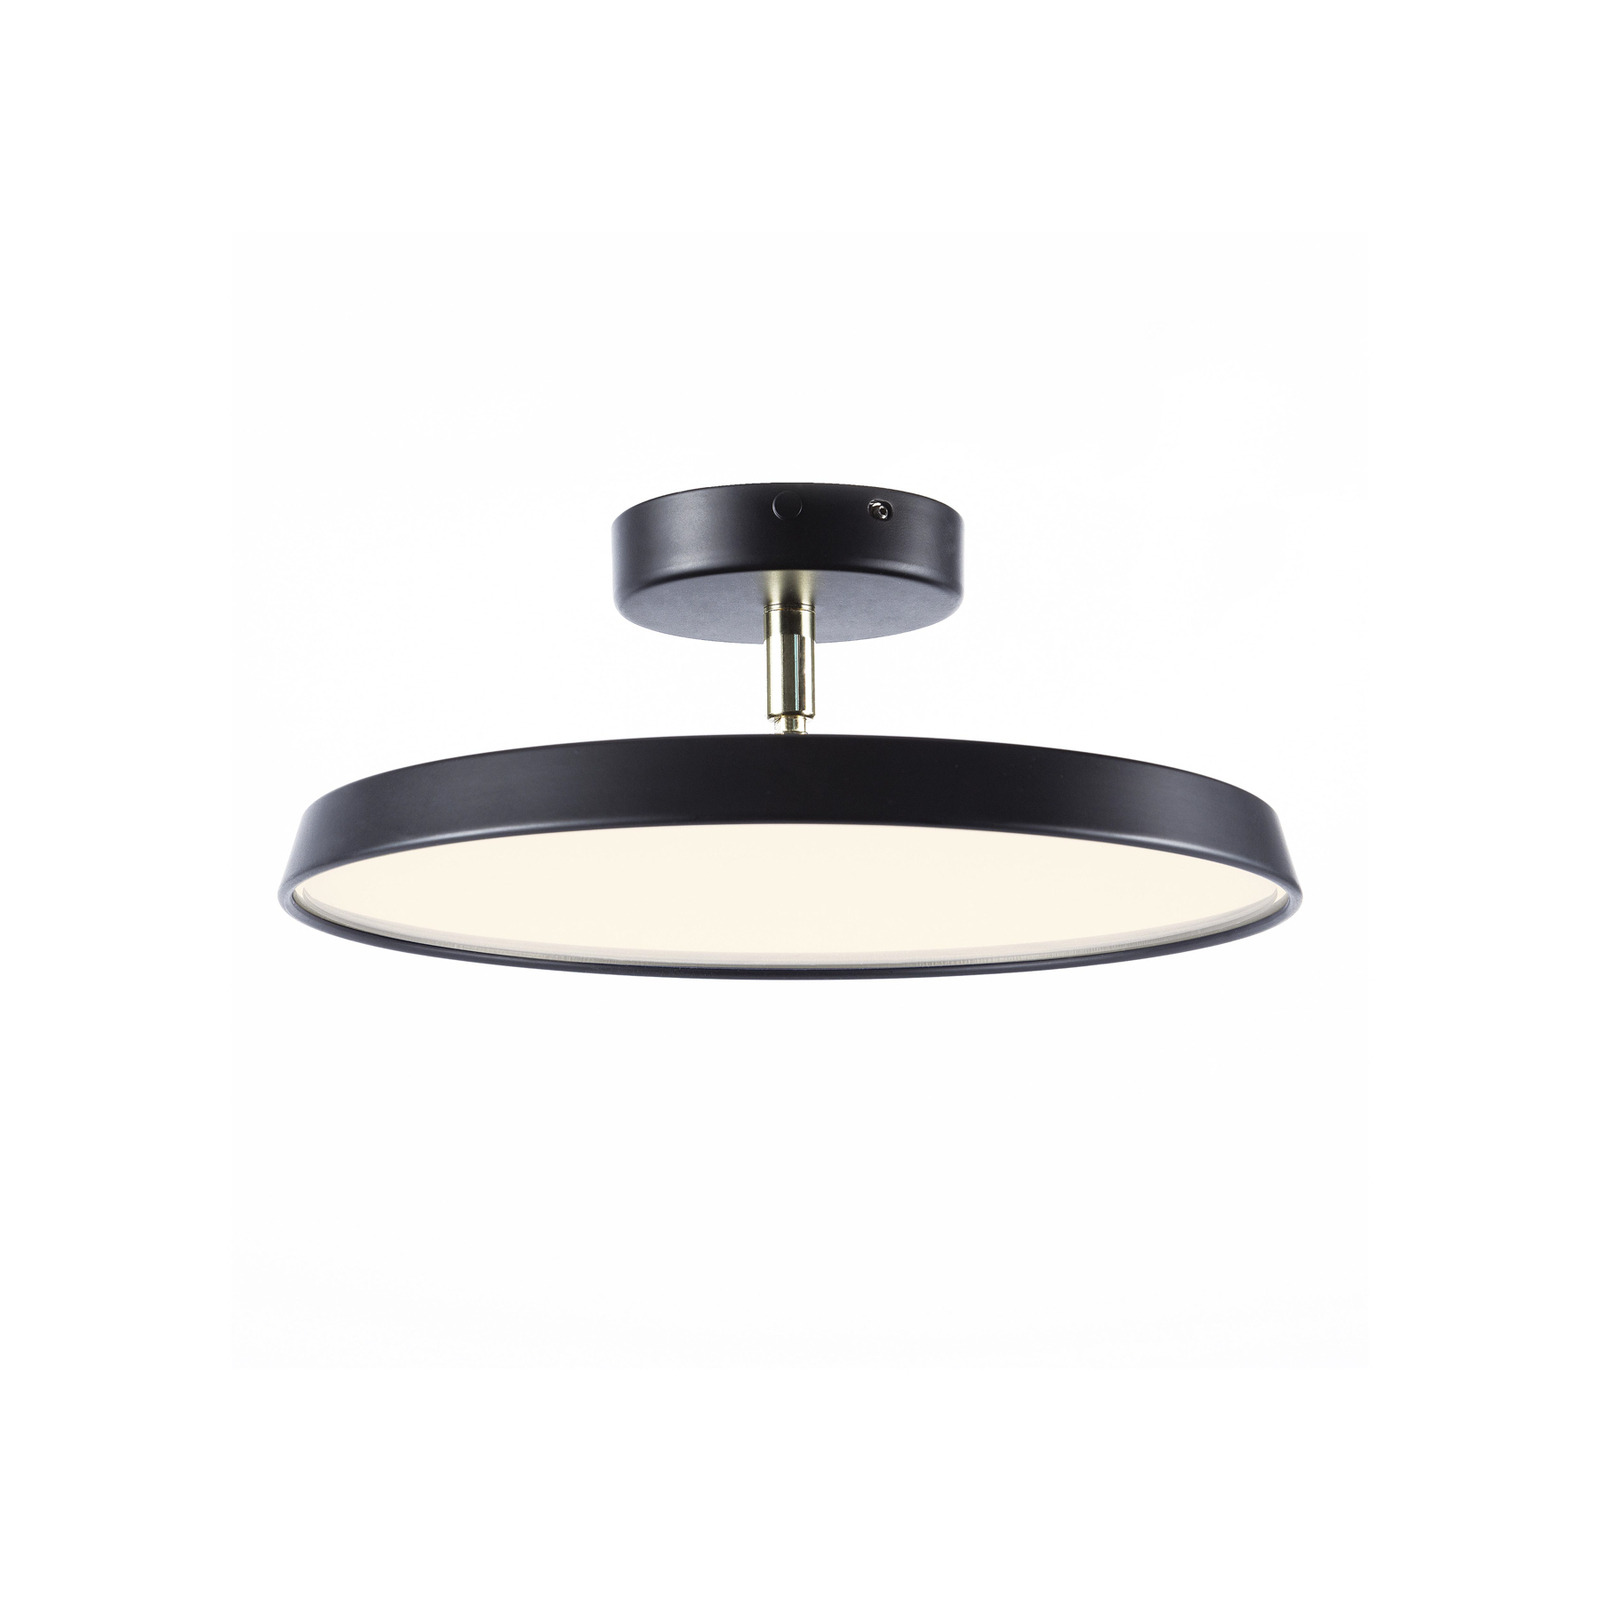 LED-loftslampe Kaito 2 Pro, Ø 30 cm, sort, mellemrum